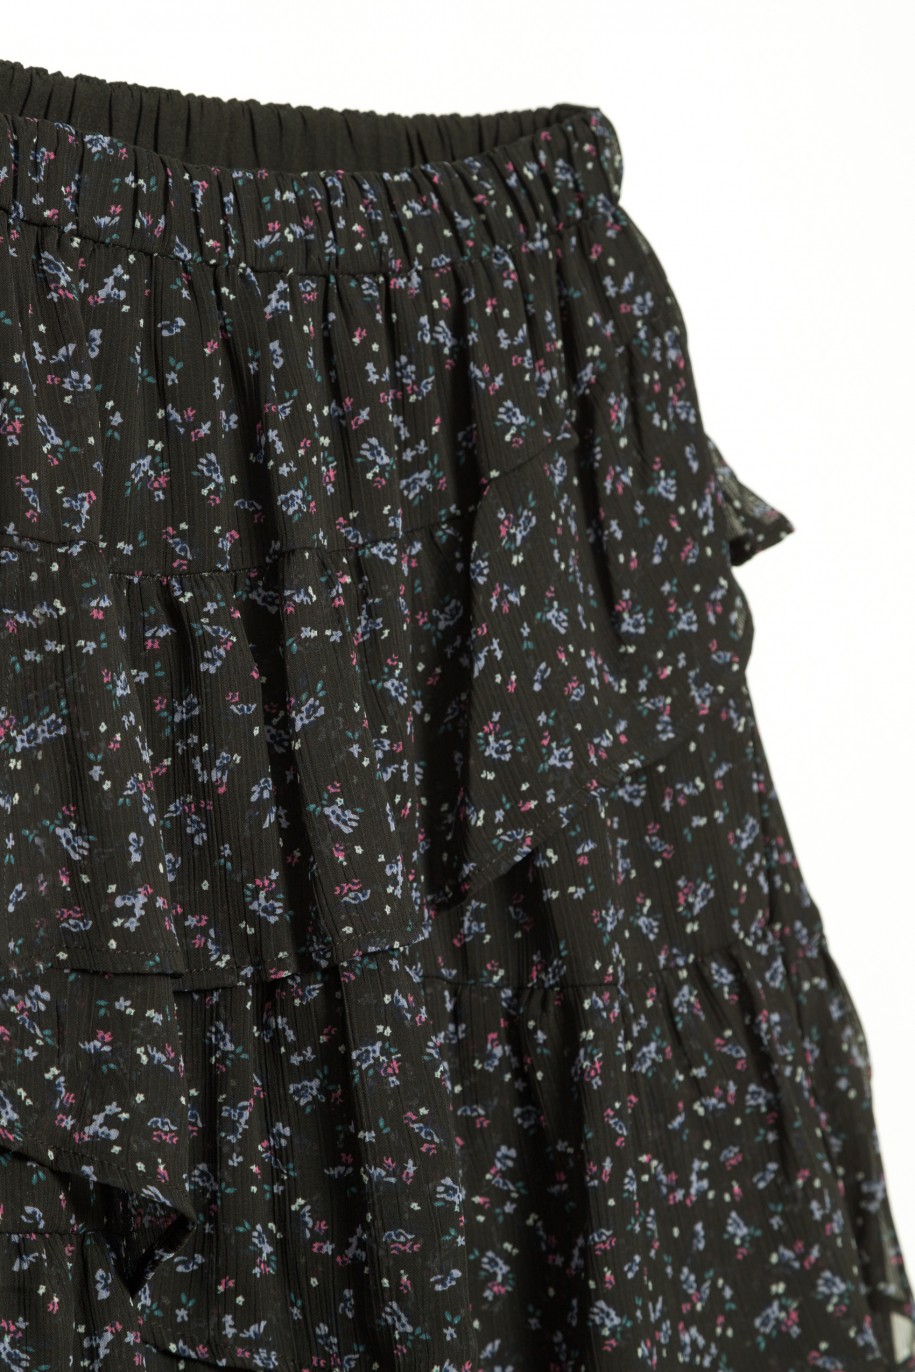 Czarna spódnica dla dziewczyny z falbanami w kwiaty - 32040